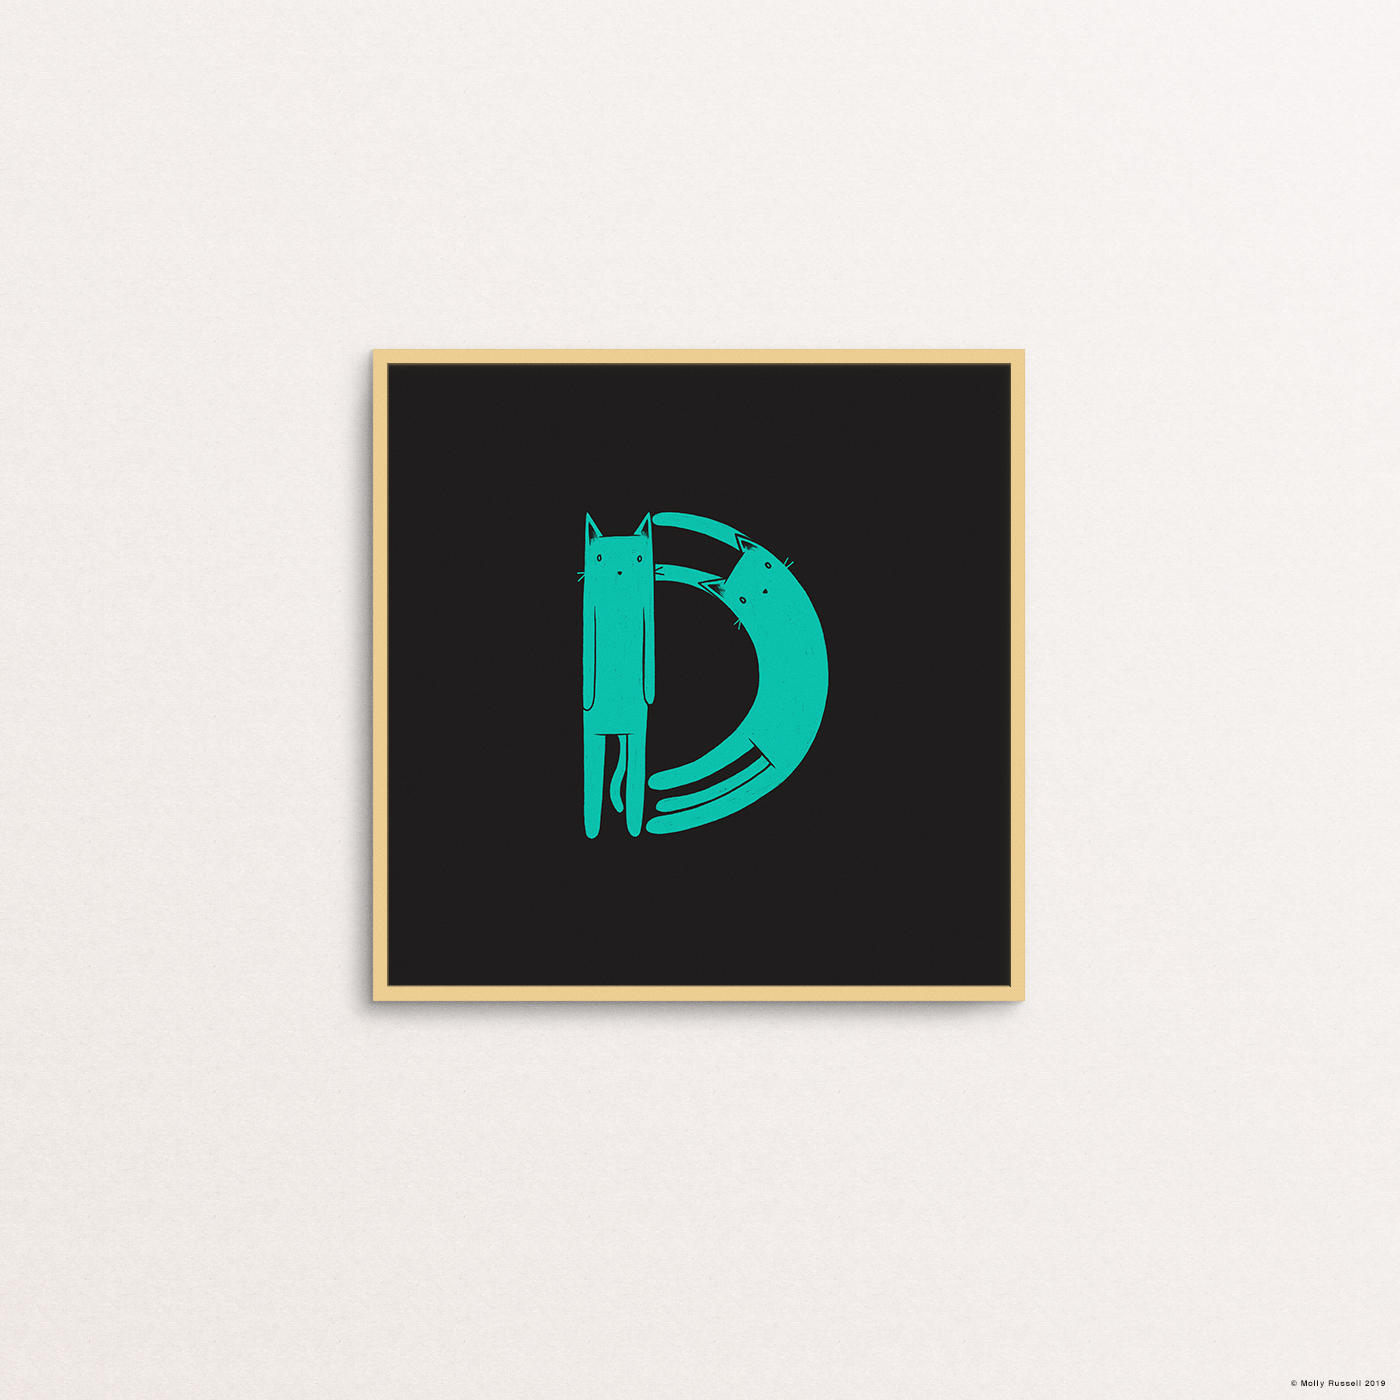 D is for Duke.